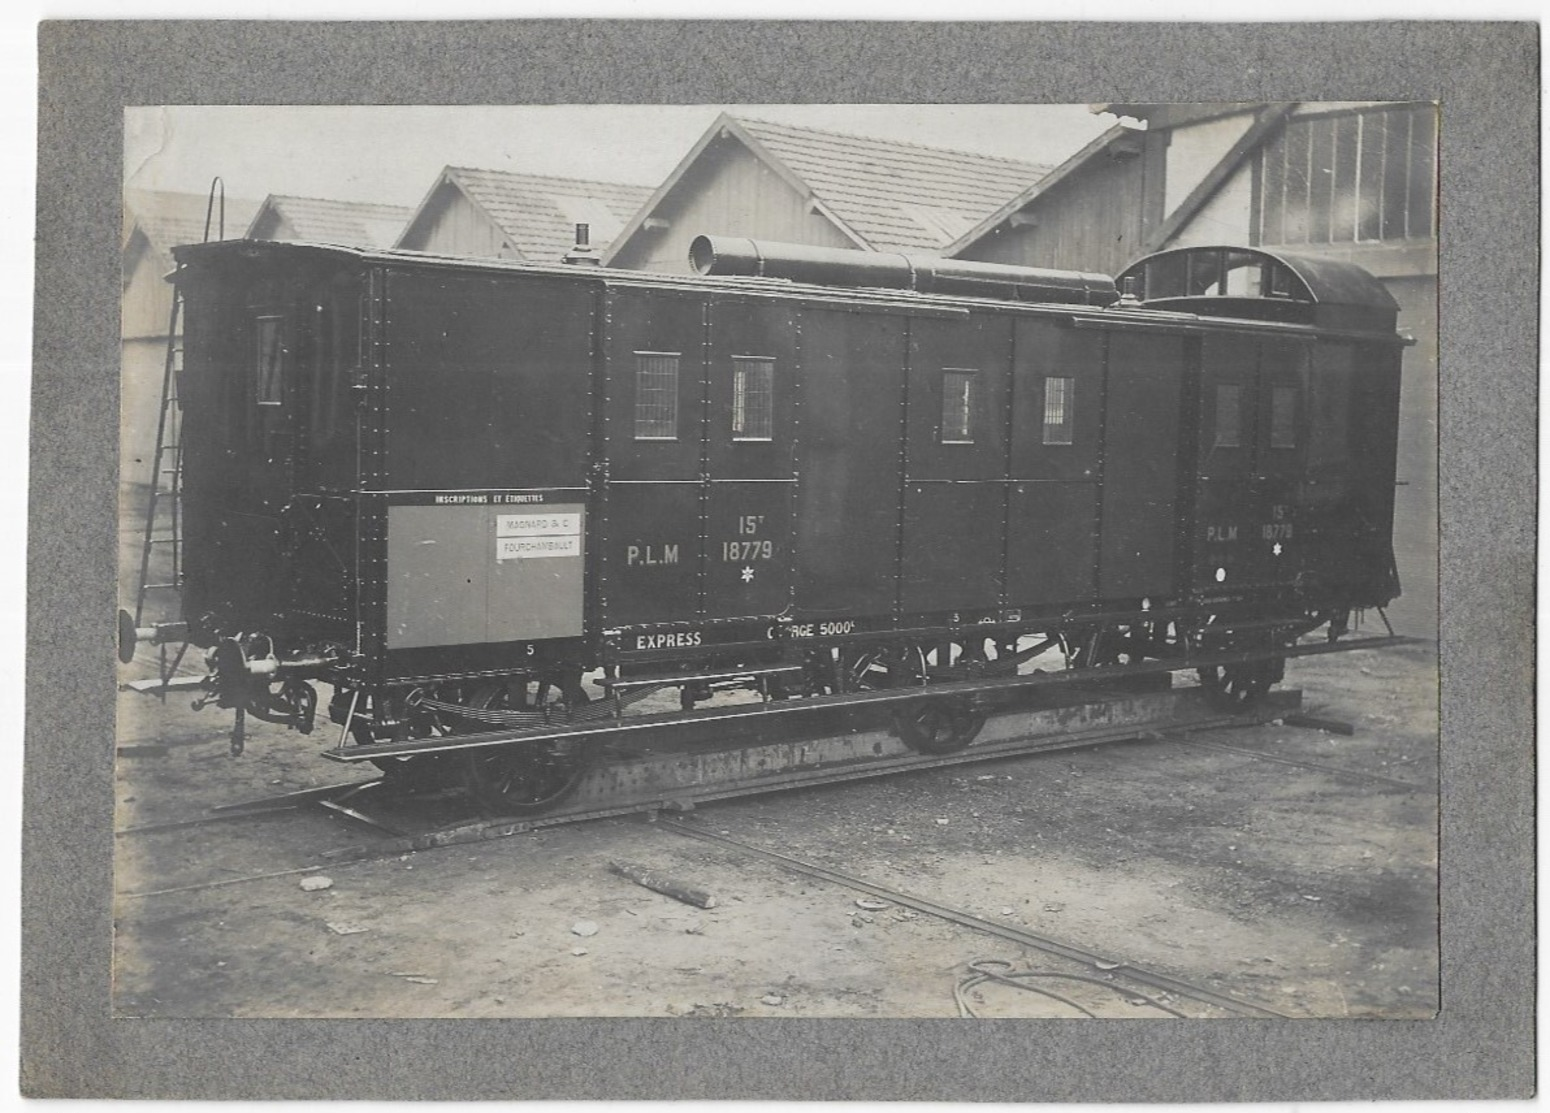 Fourchambault (Nièvre) Wagon Atelier Magnard & Cie PLM Express N° 18779 15T Photo Simon Paris - Trains